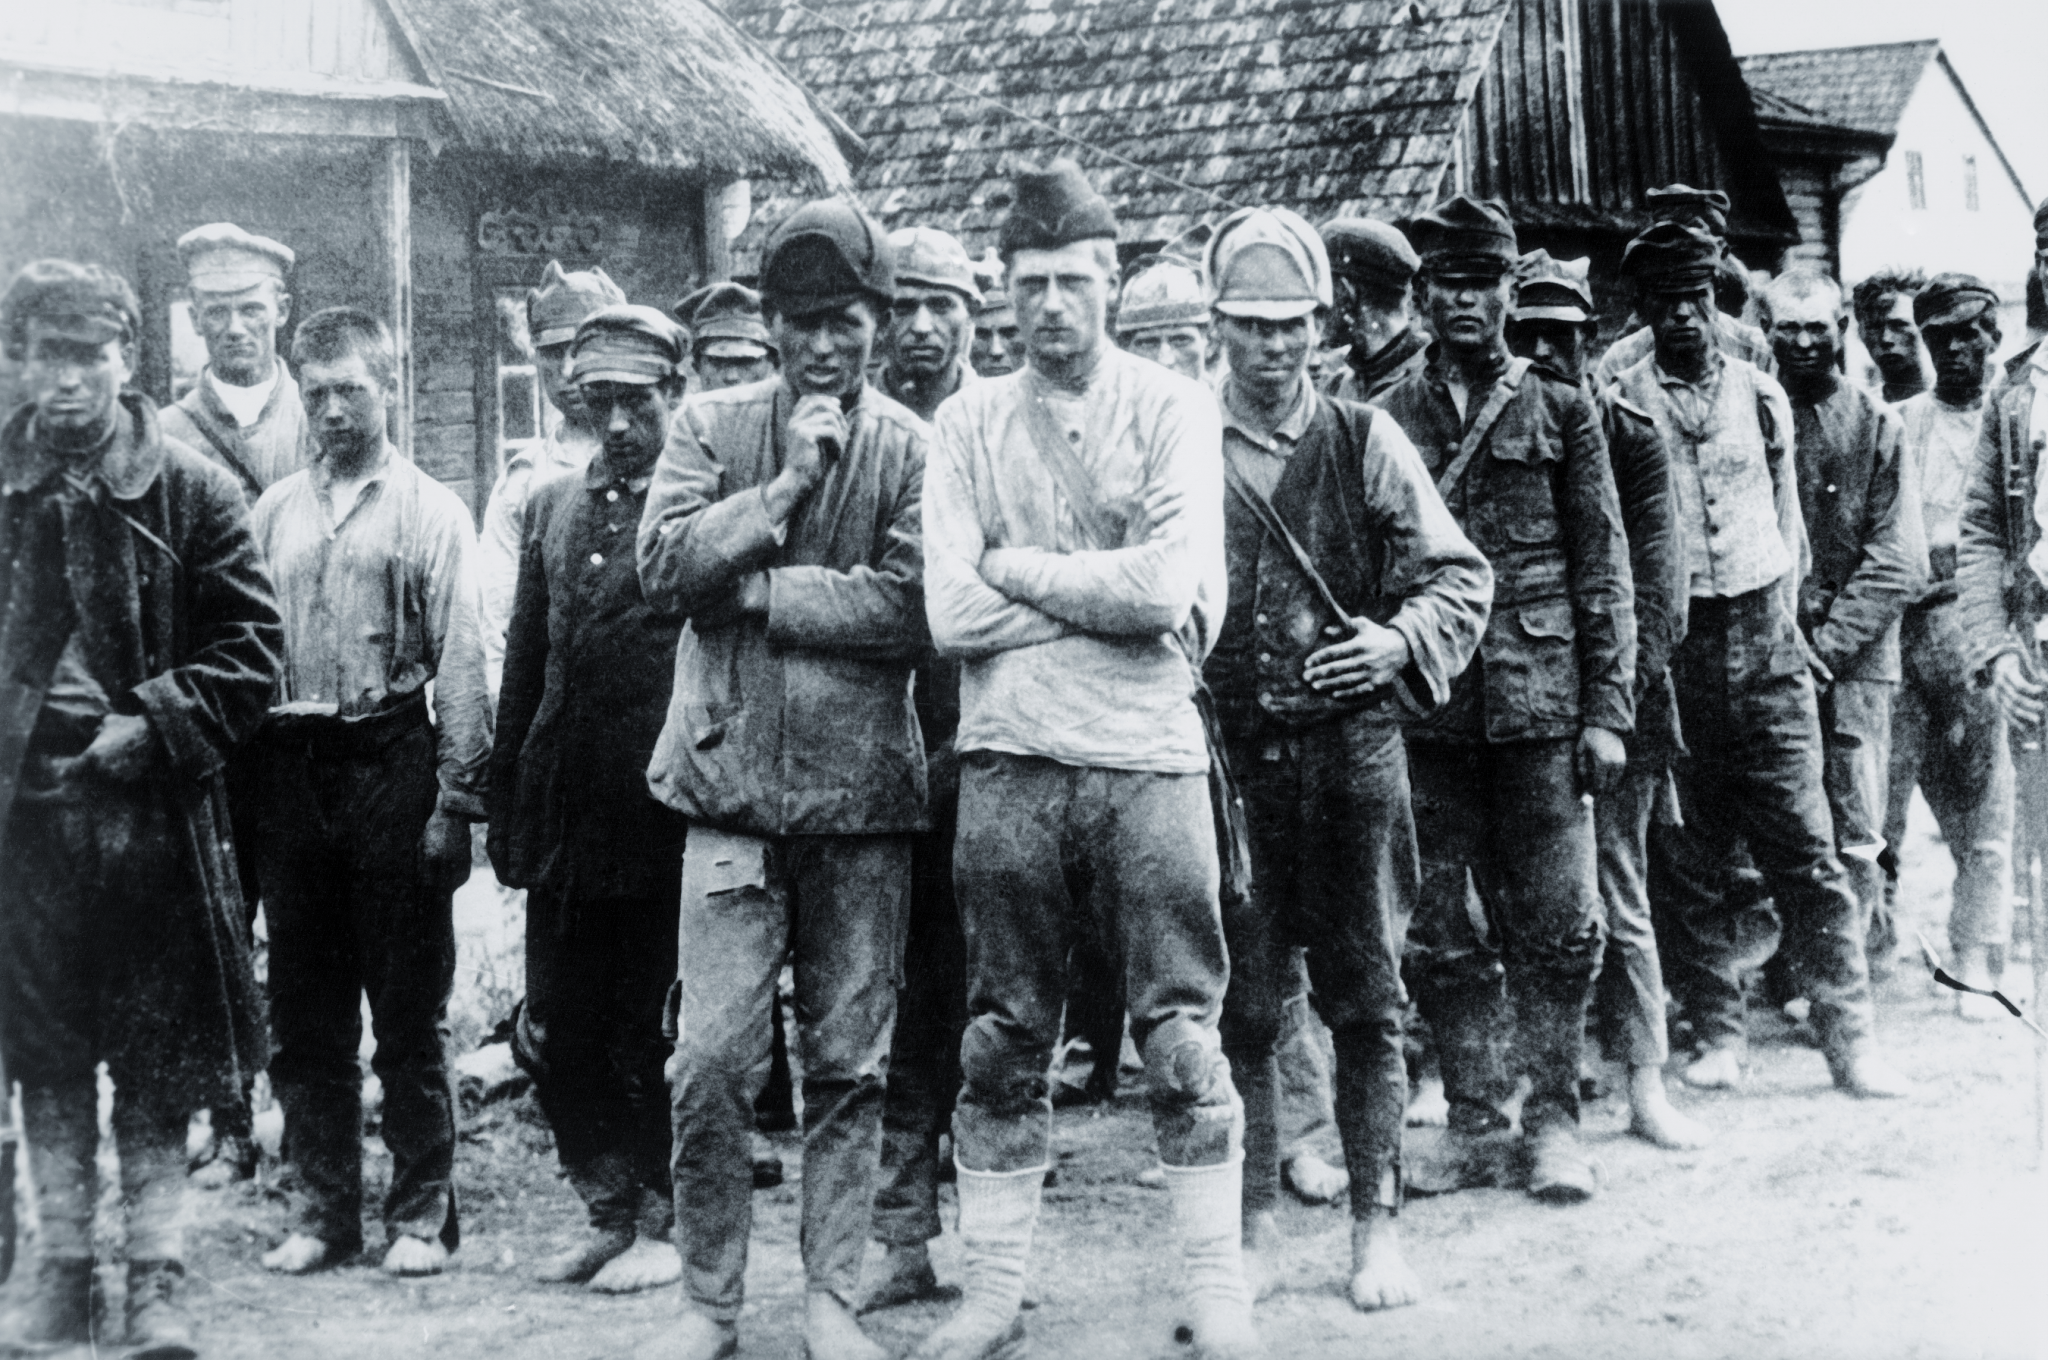 1920. Polscy żołnierze w sowieckiej niewoli. Źródło: Rosyjskie Państwowe Archiwum Kino-foto-dokumentów w Krasnogorsku